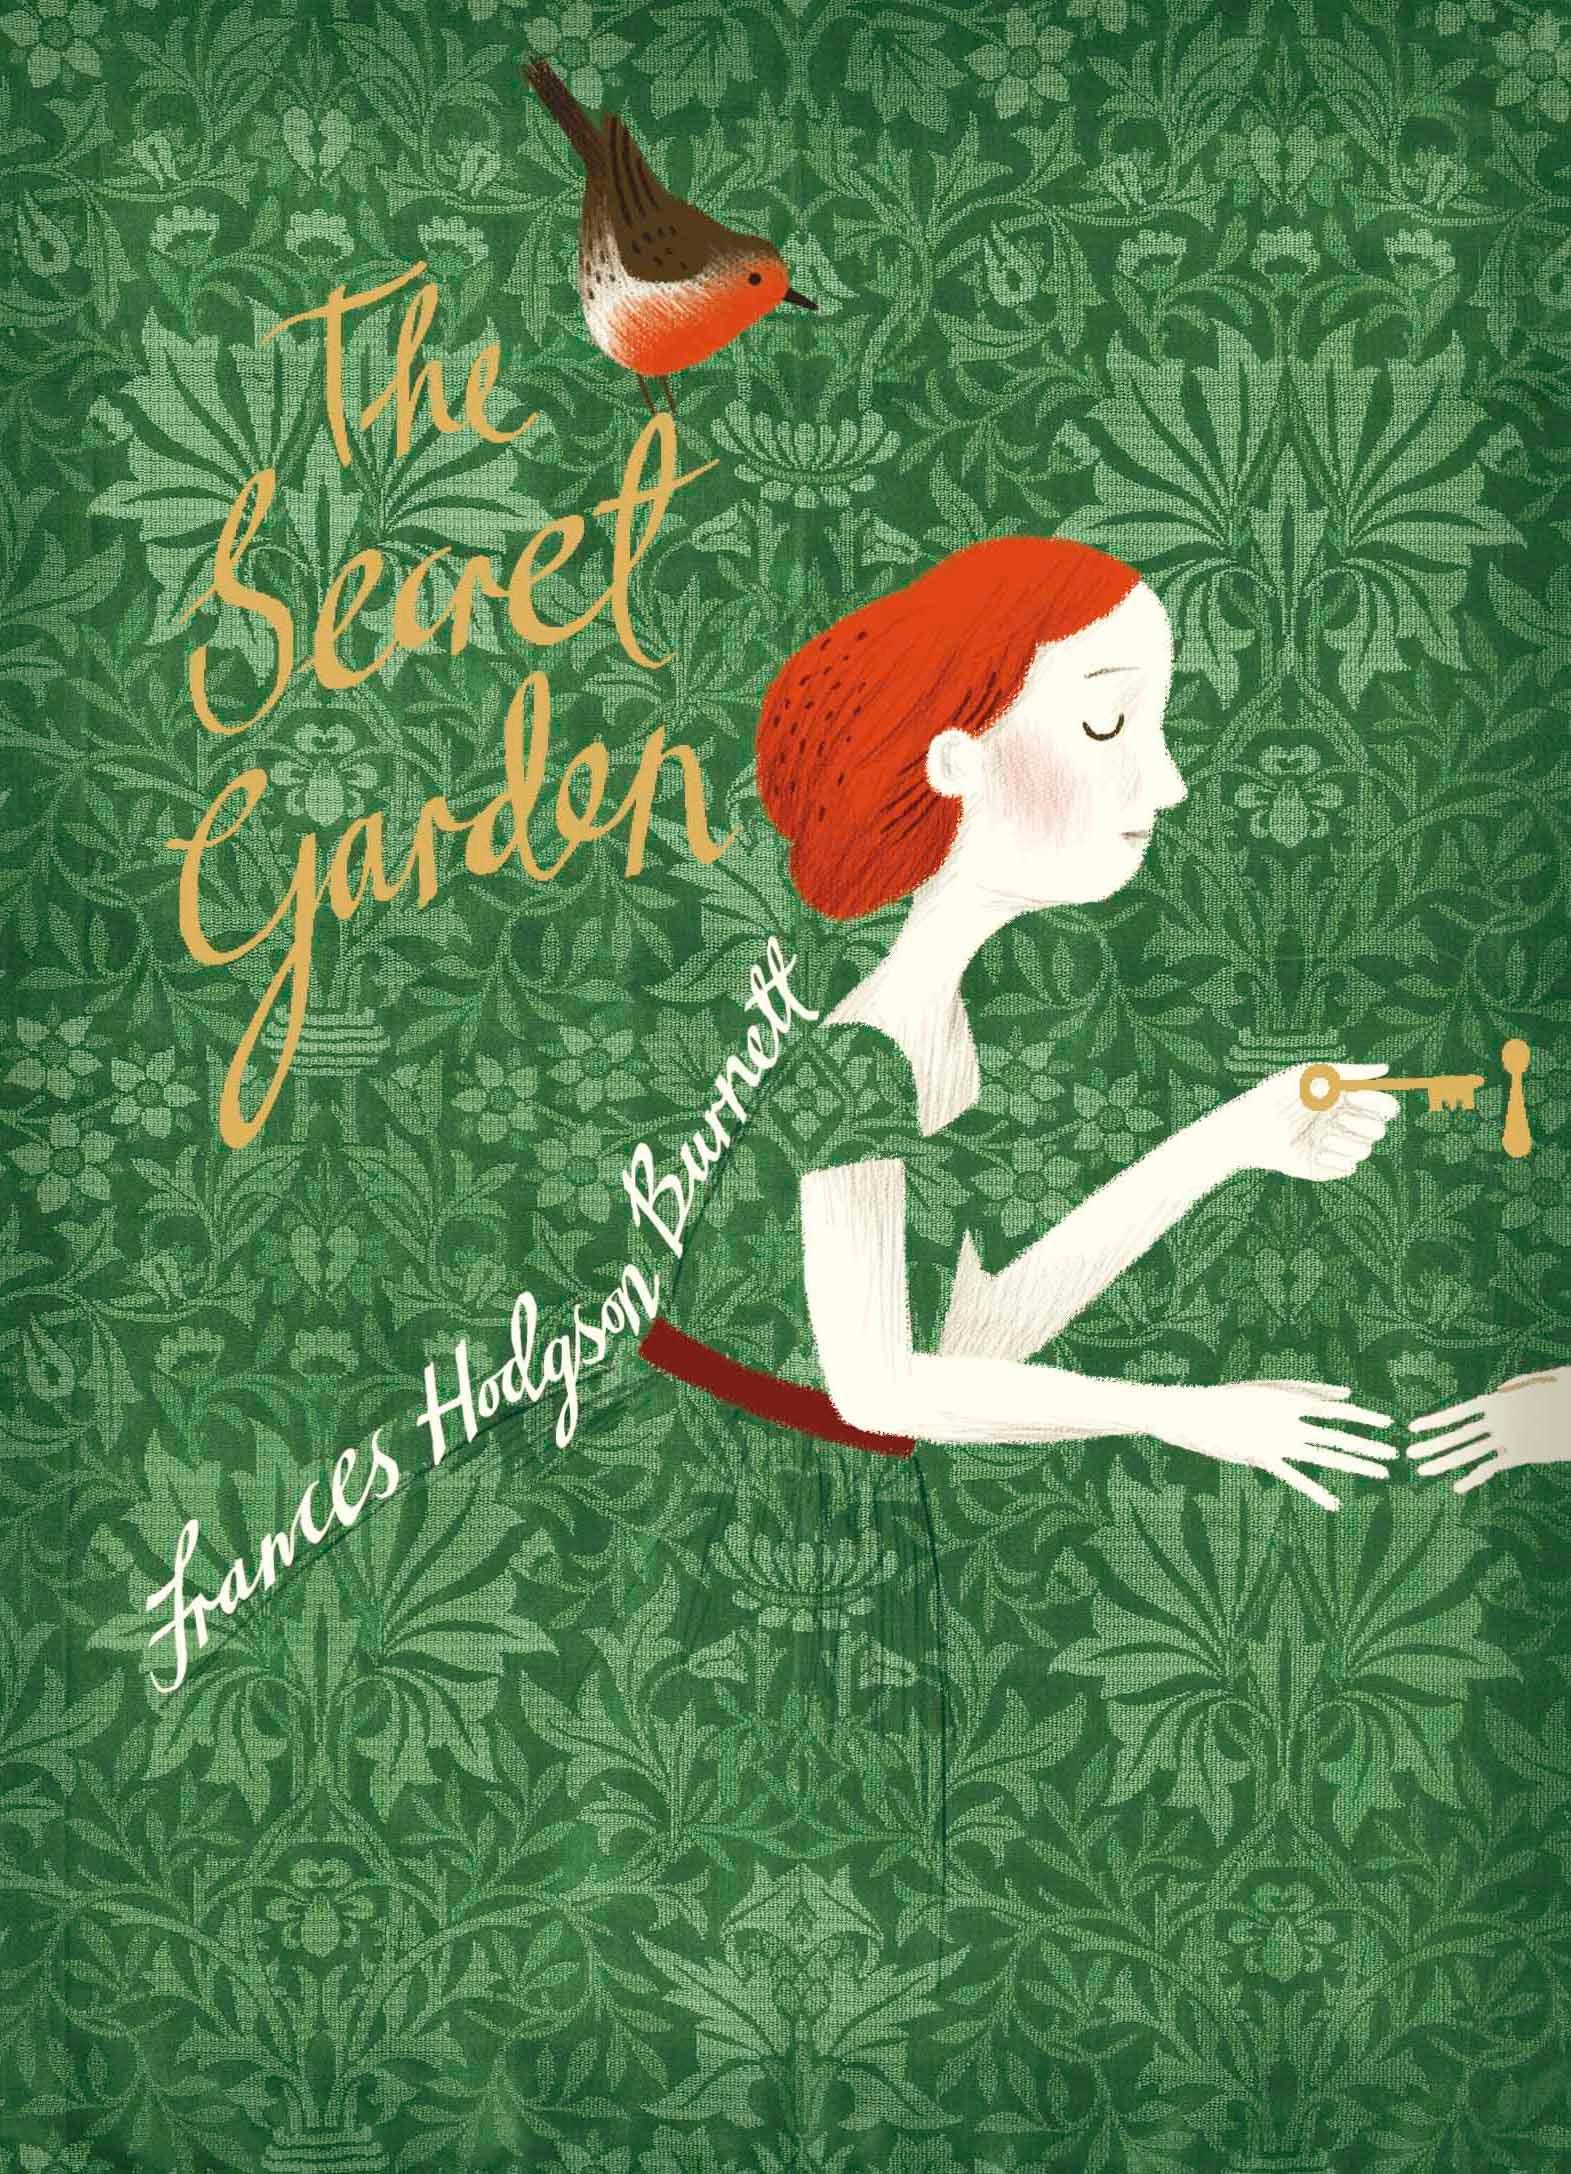 The Secret Garden. V & A Collector's Edition / Frances Hodgson Burnett / Buch / Puffin Classics / 342 S. / Englisch / 2017 / Penguin Books Ltd (UK) / EAN 9780141385501 - Burnett, Frances Hodgson